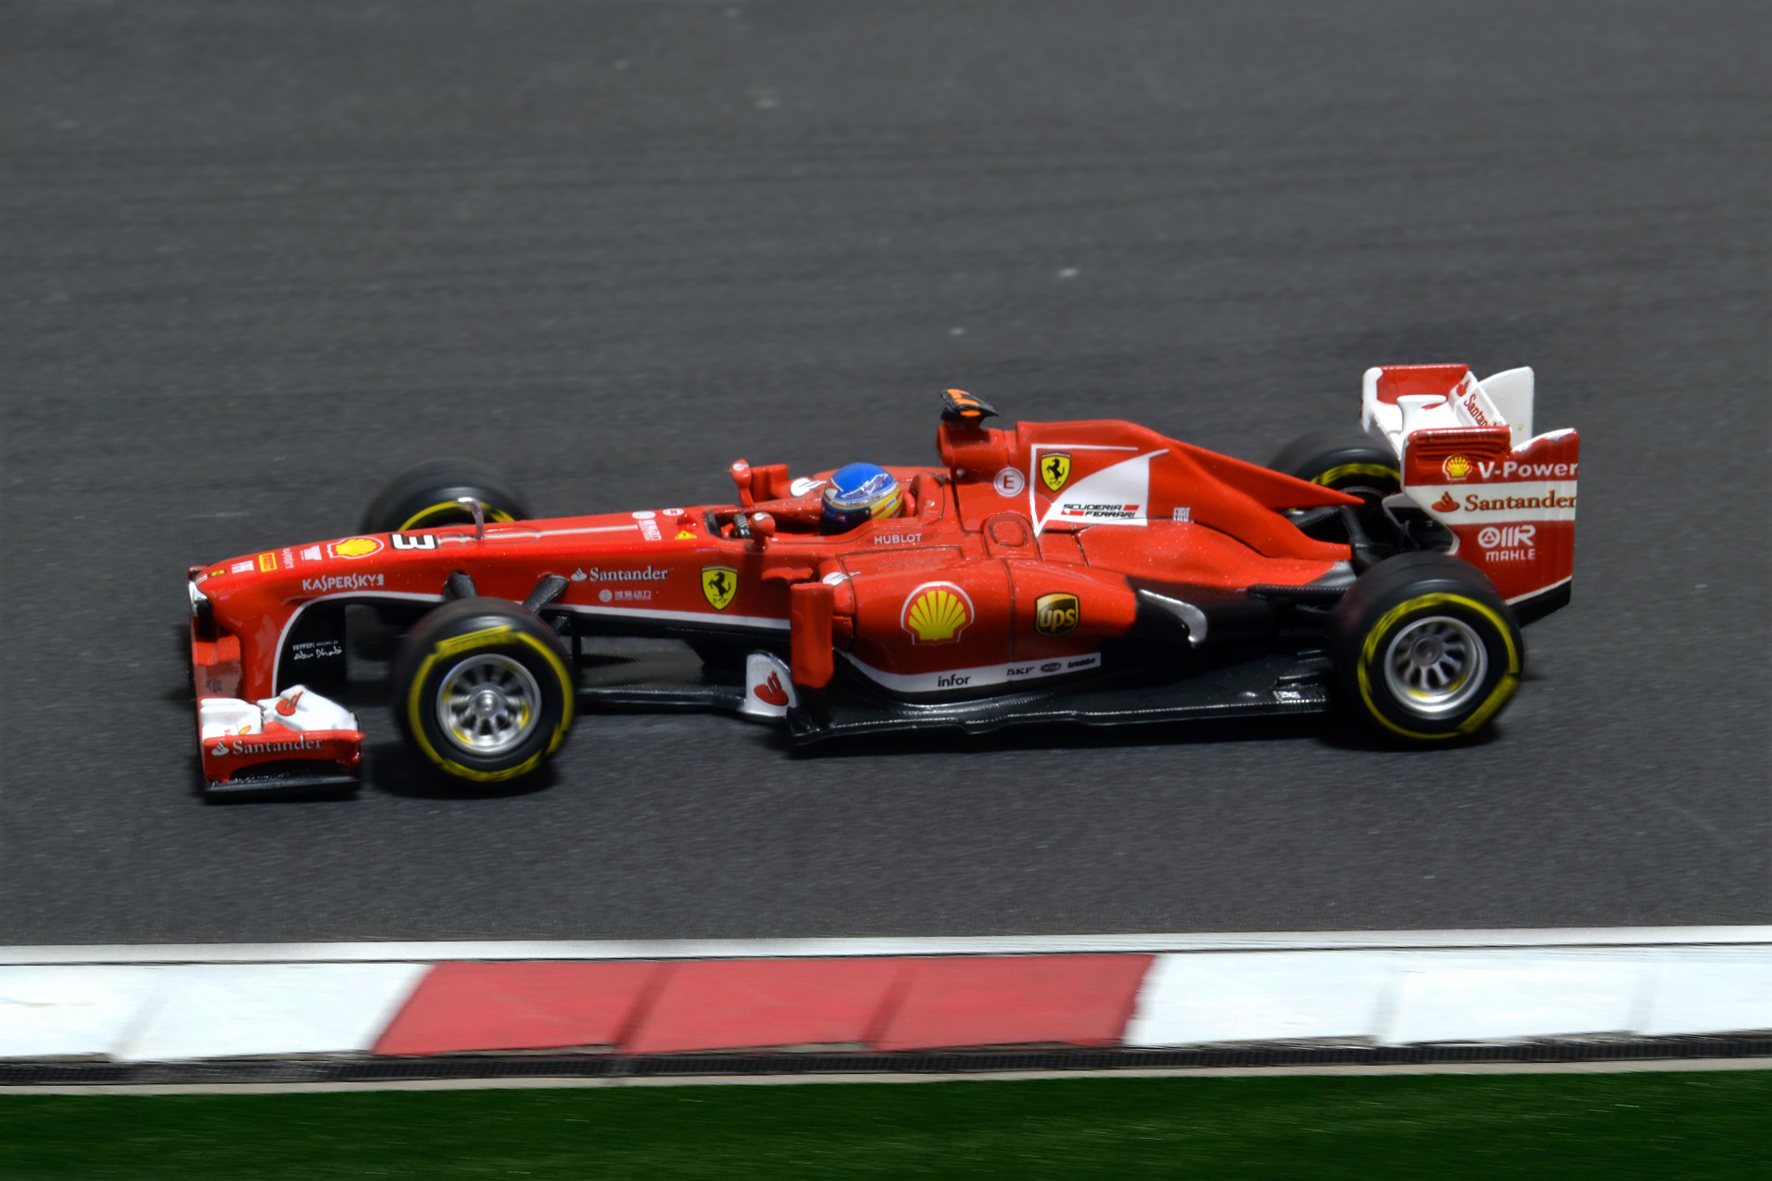 Ferrari F138 Fernando Alonso 2013 - Hot Wheels 1:43